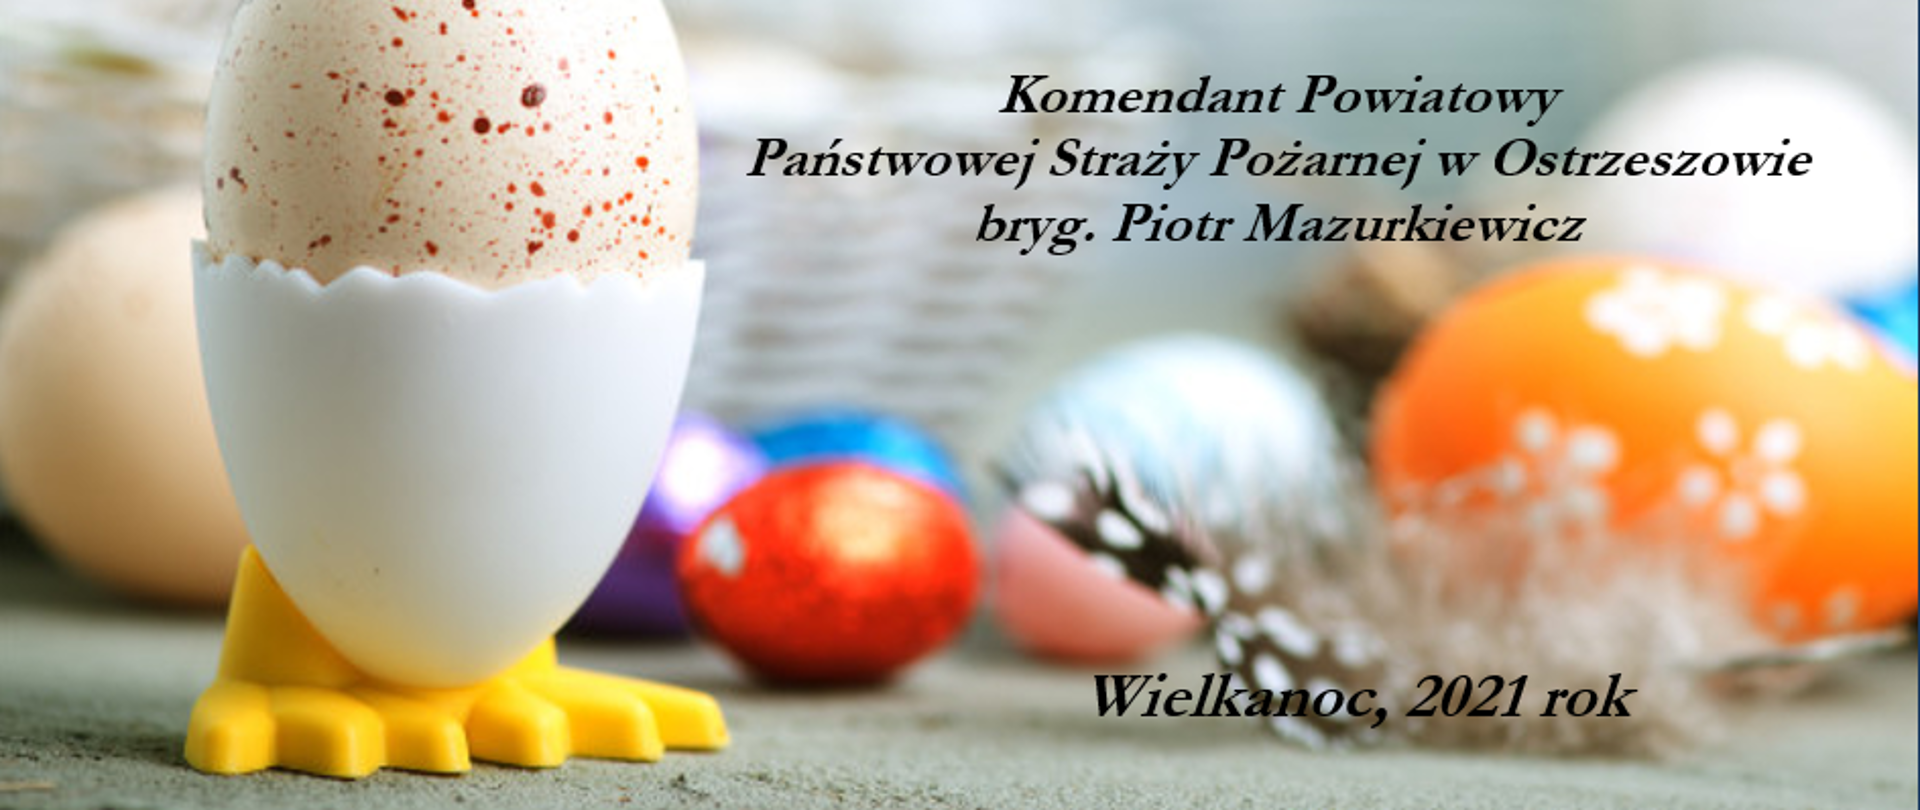 Kartka z życzeniami Wielkanocnymi od Komendanta Powiatowego Państwowej Straży Pożarnej w Ostrzeszowie. W tle motyw świąteczny: jajeczka, koszyczek, kolorowe pisanki.